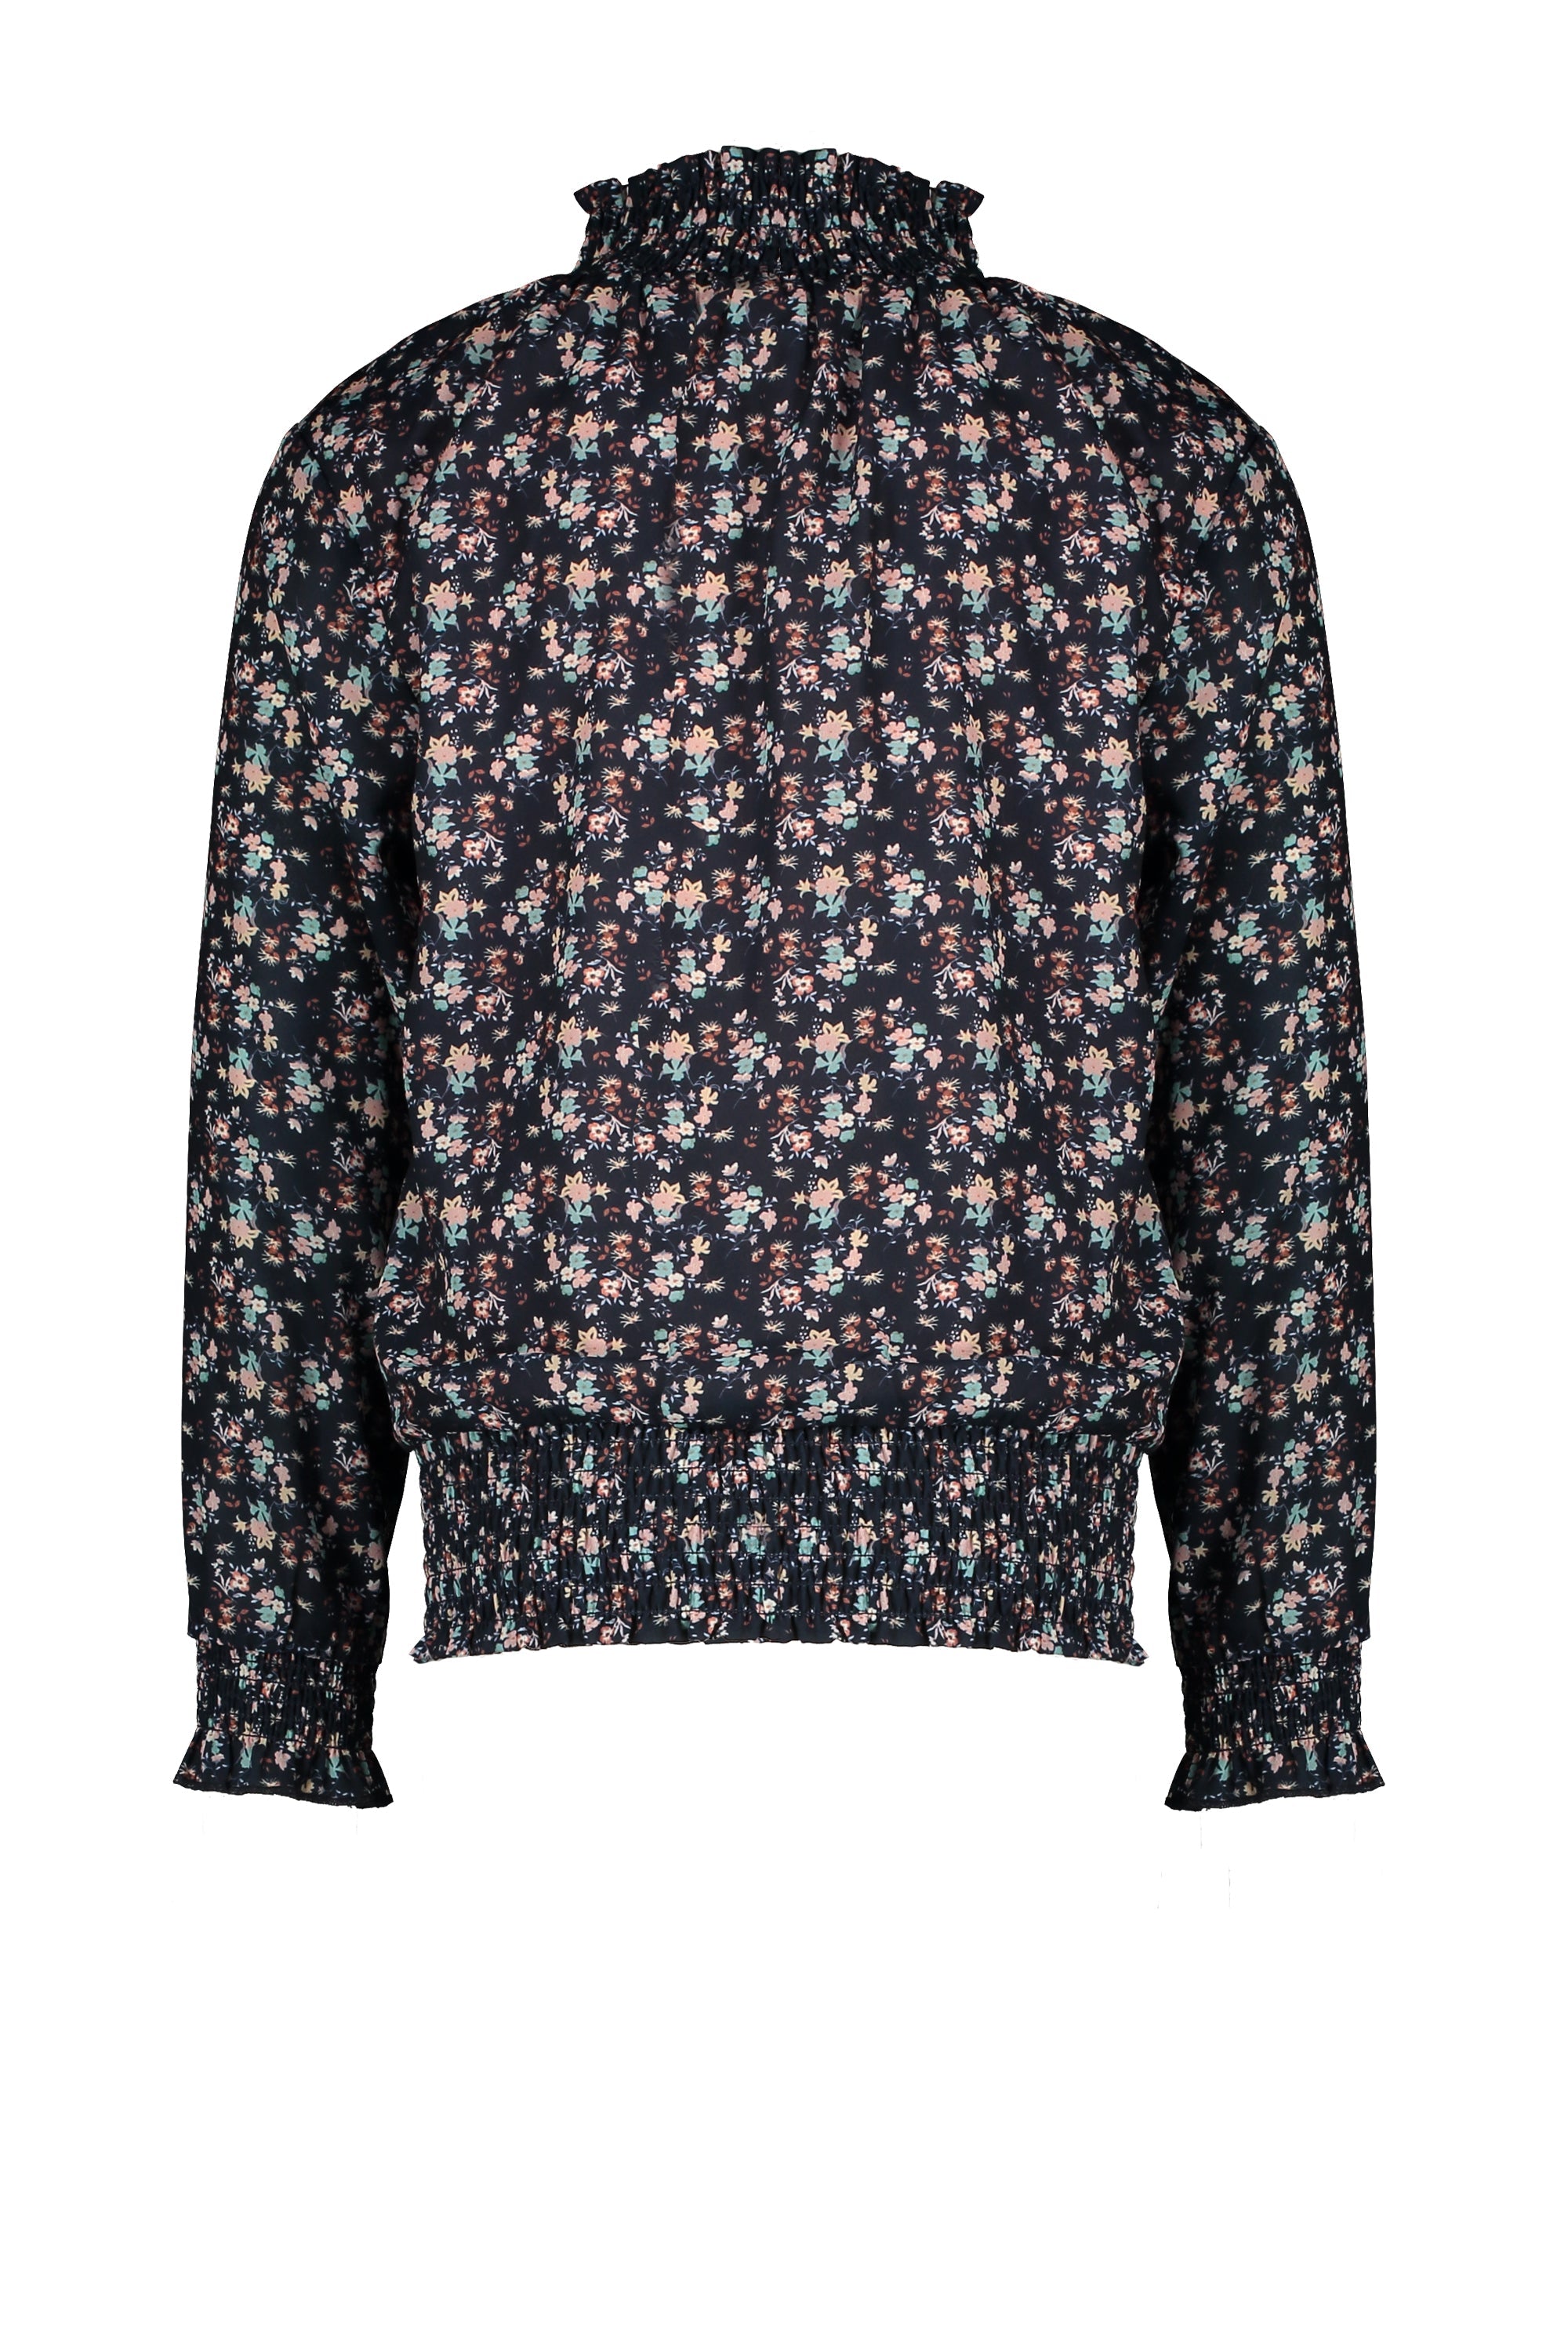 Meisjes Tipi blouse with smocked cuff/hem/neck van NoNo in de kleur Navy Blazer in maat 146/152.